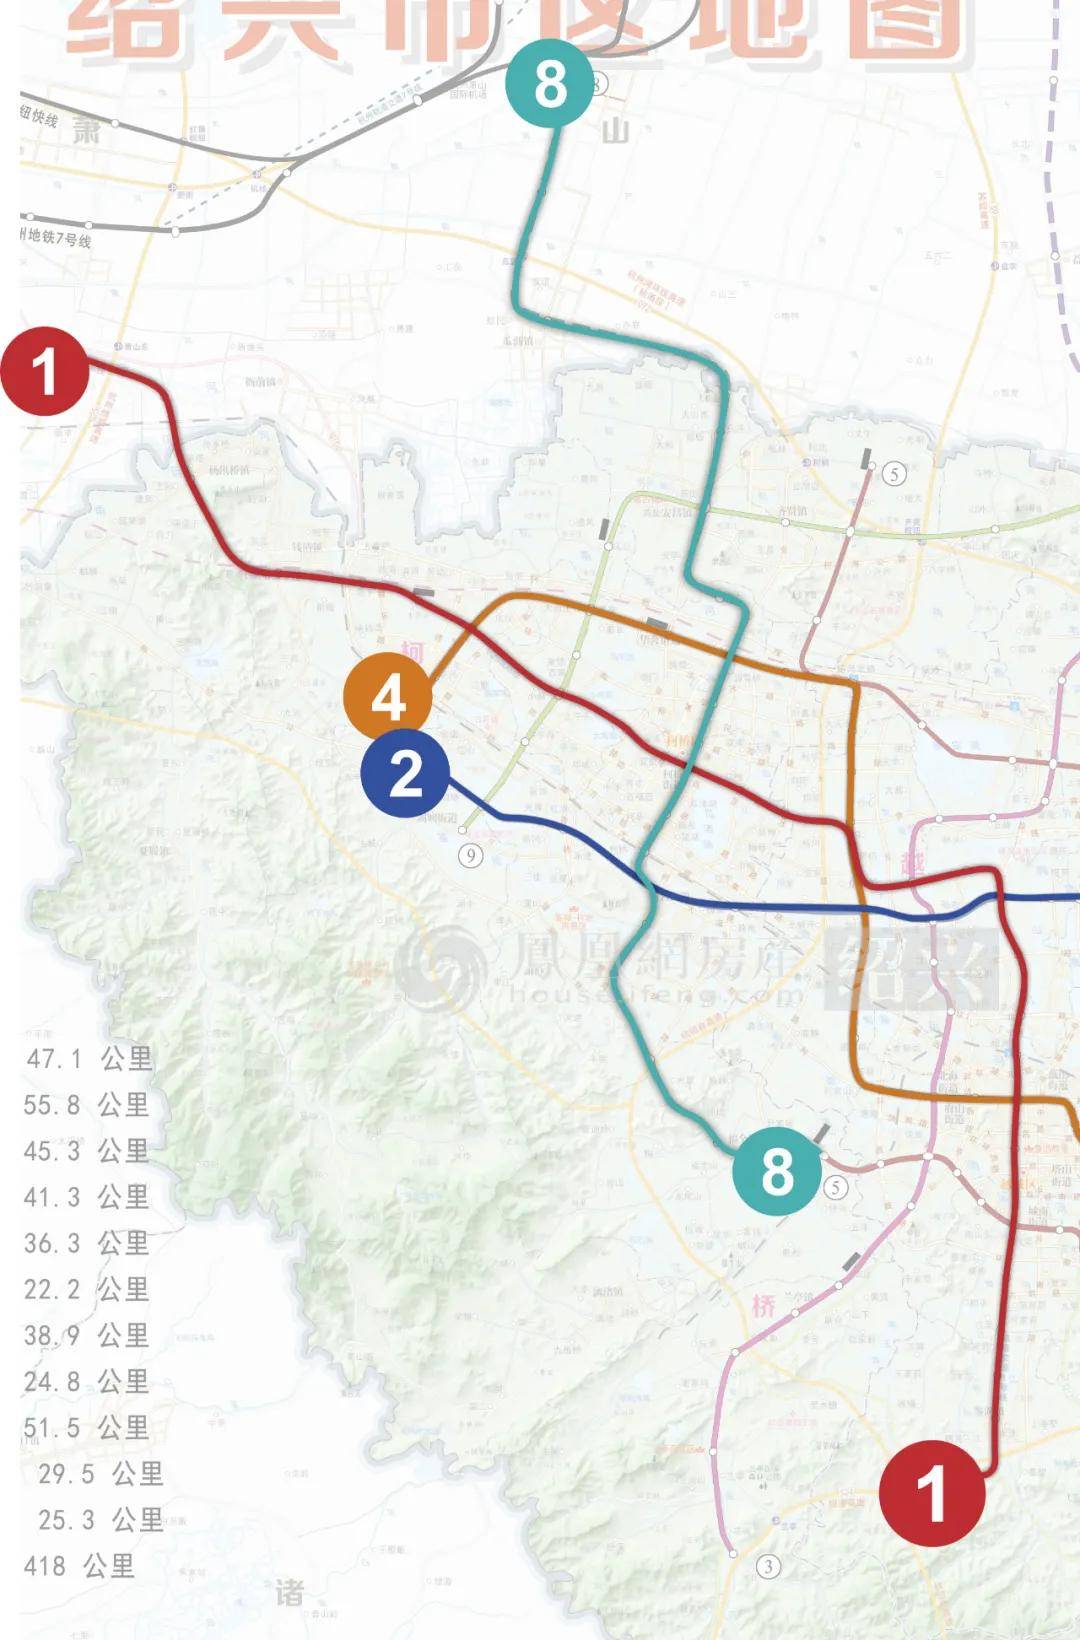 大家最关注的地铁方面 到2035年,柯桥将拥有4条地铁线,分别为1,2,4,8